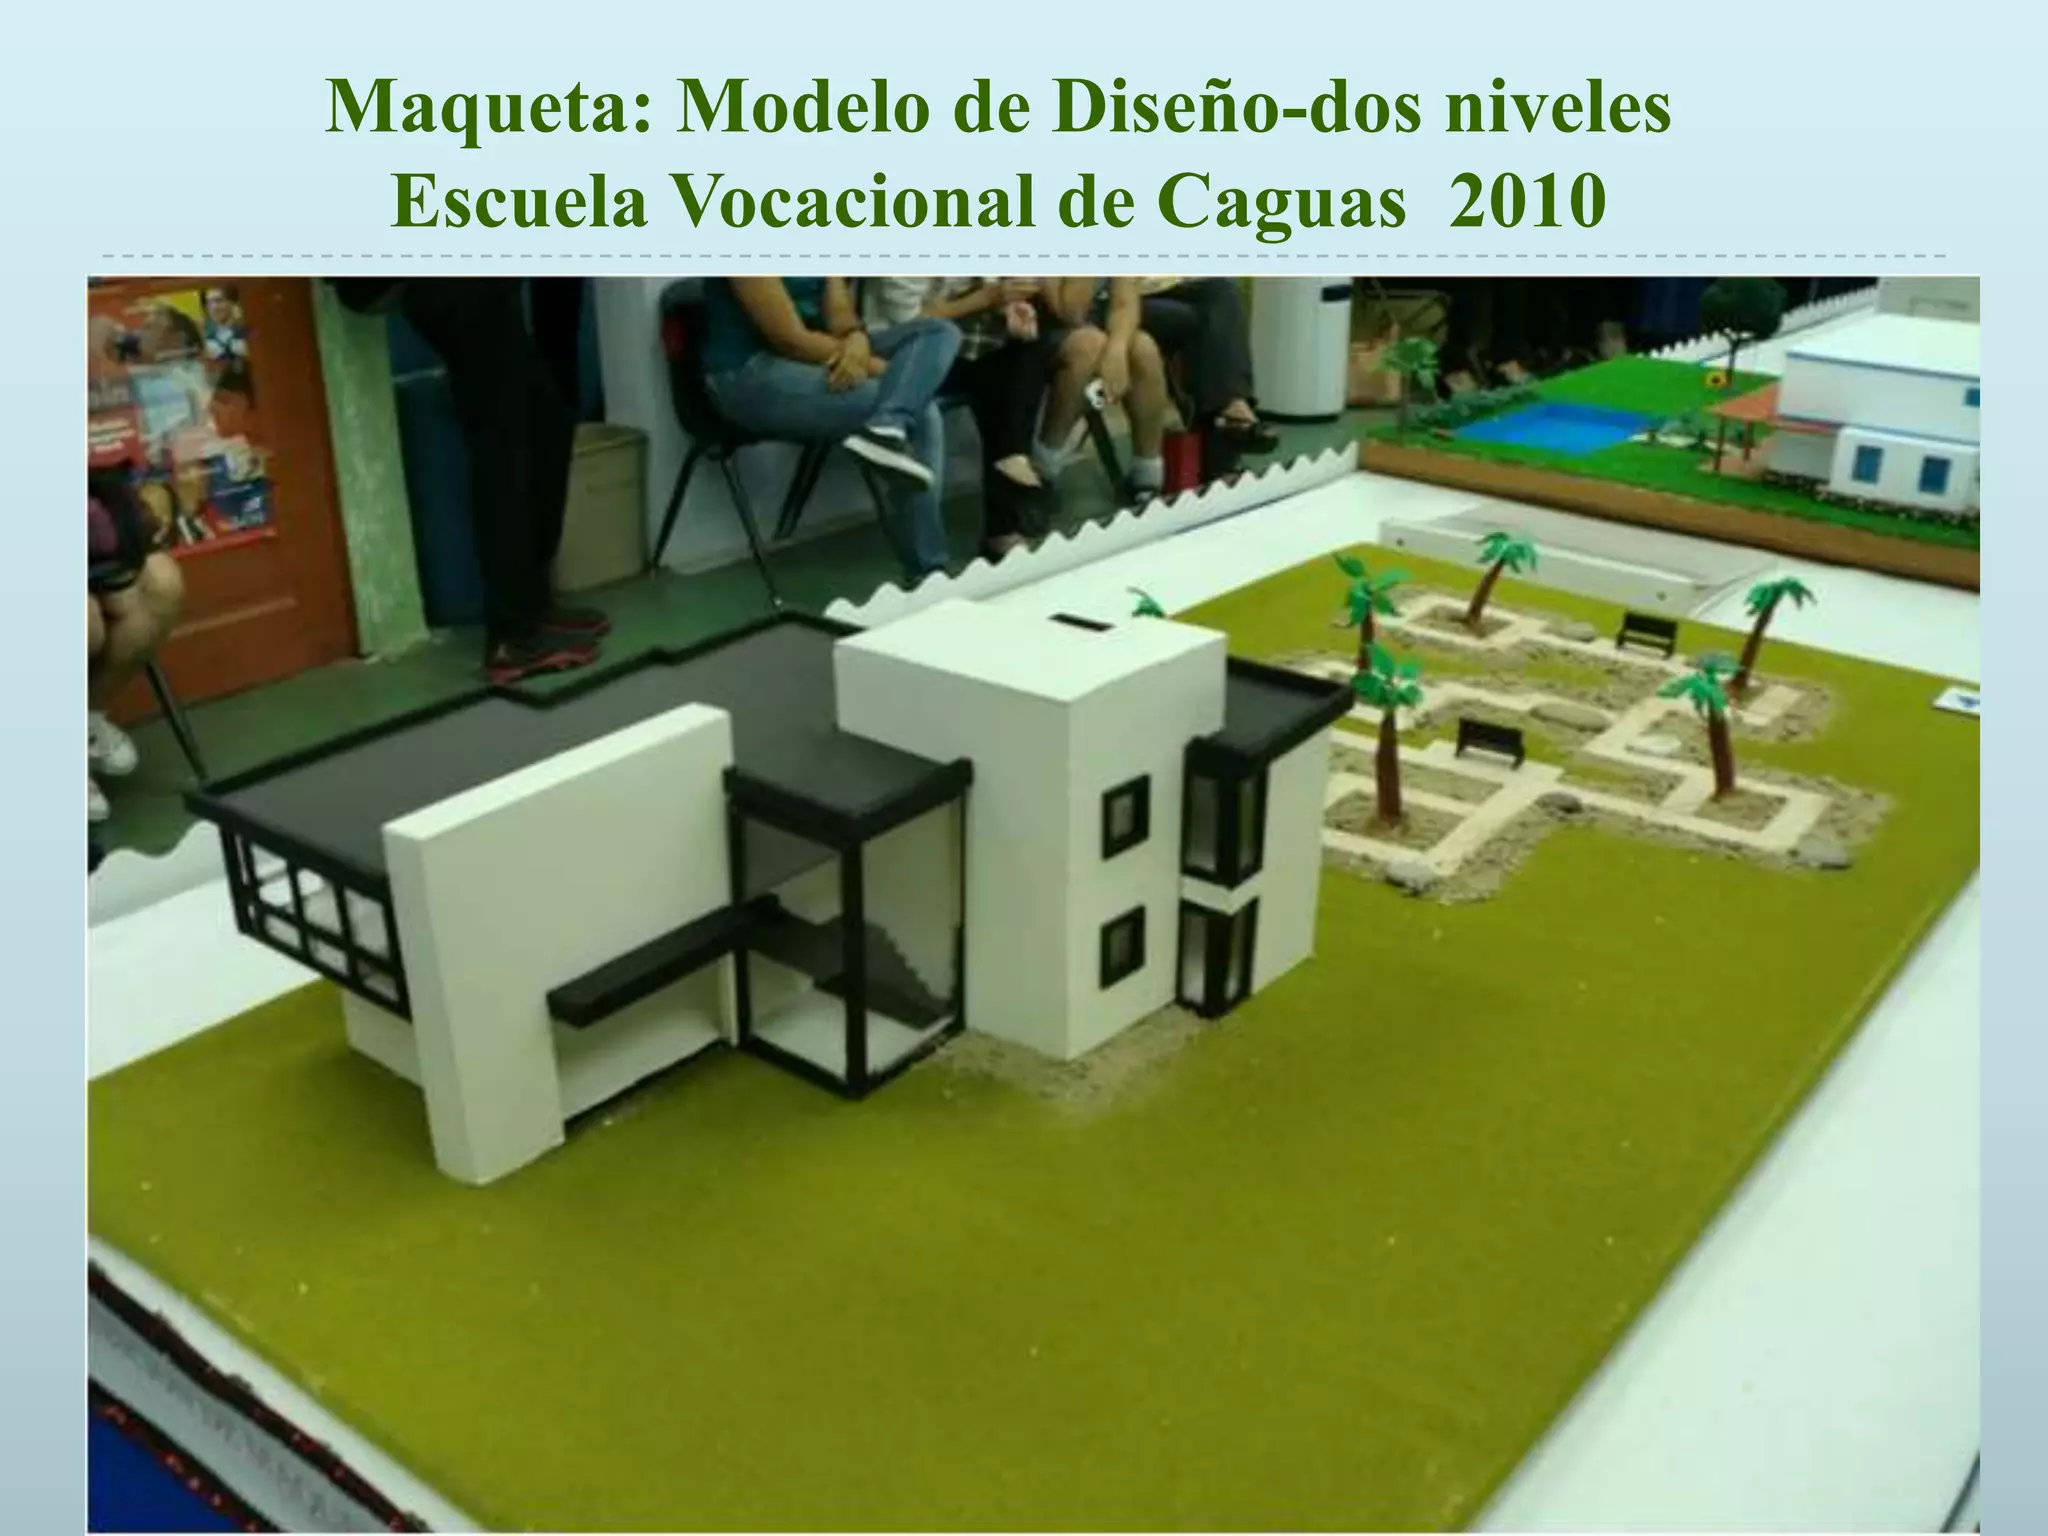 Modelos de Maquetas Estudiantiles / Architectural Model Making